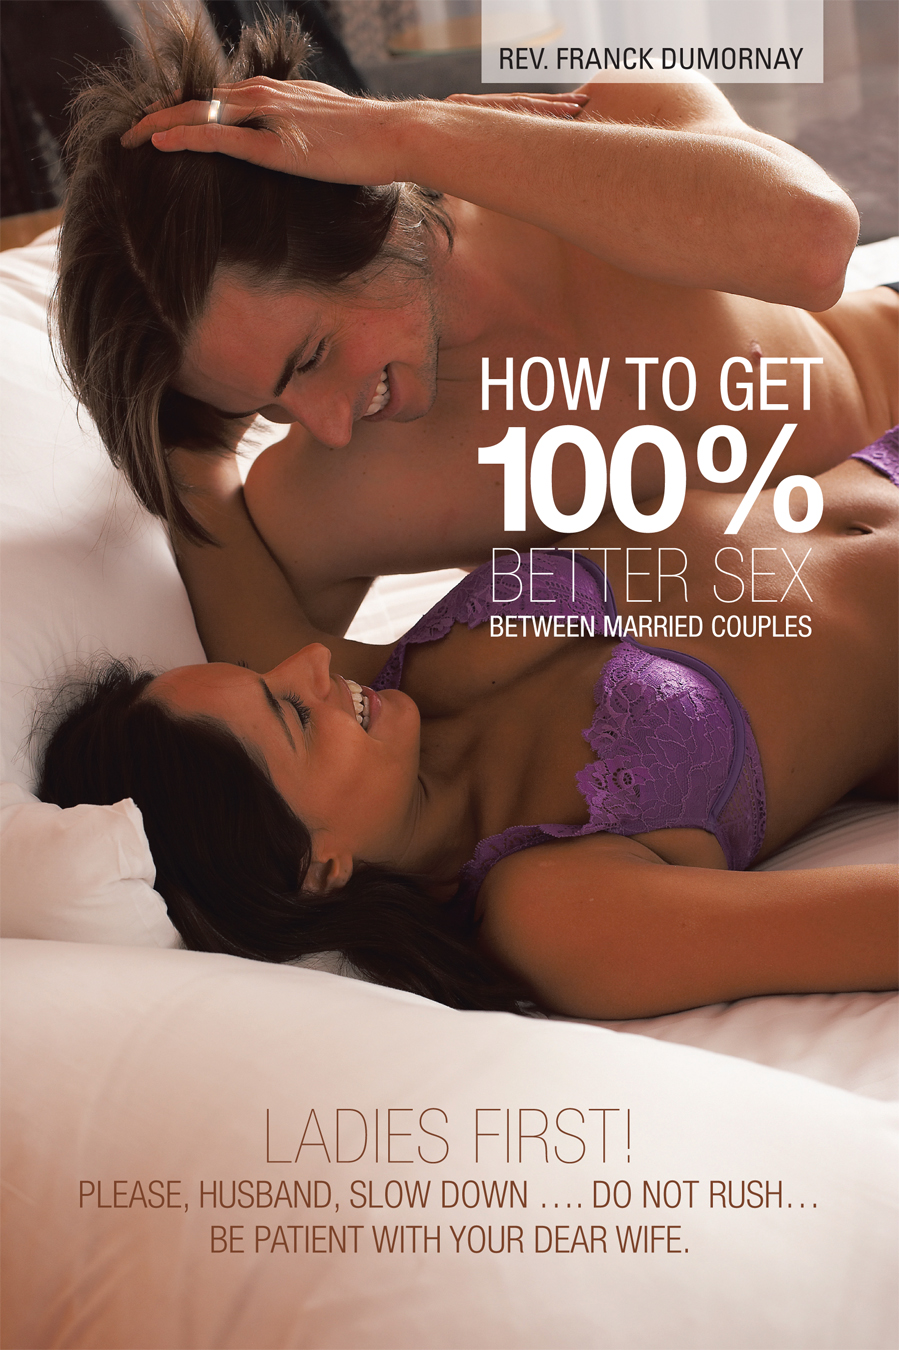 How to Get 100% Better Sex Between.. image